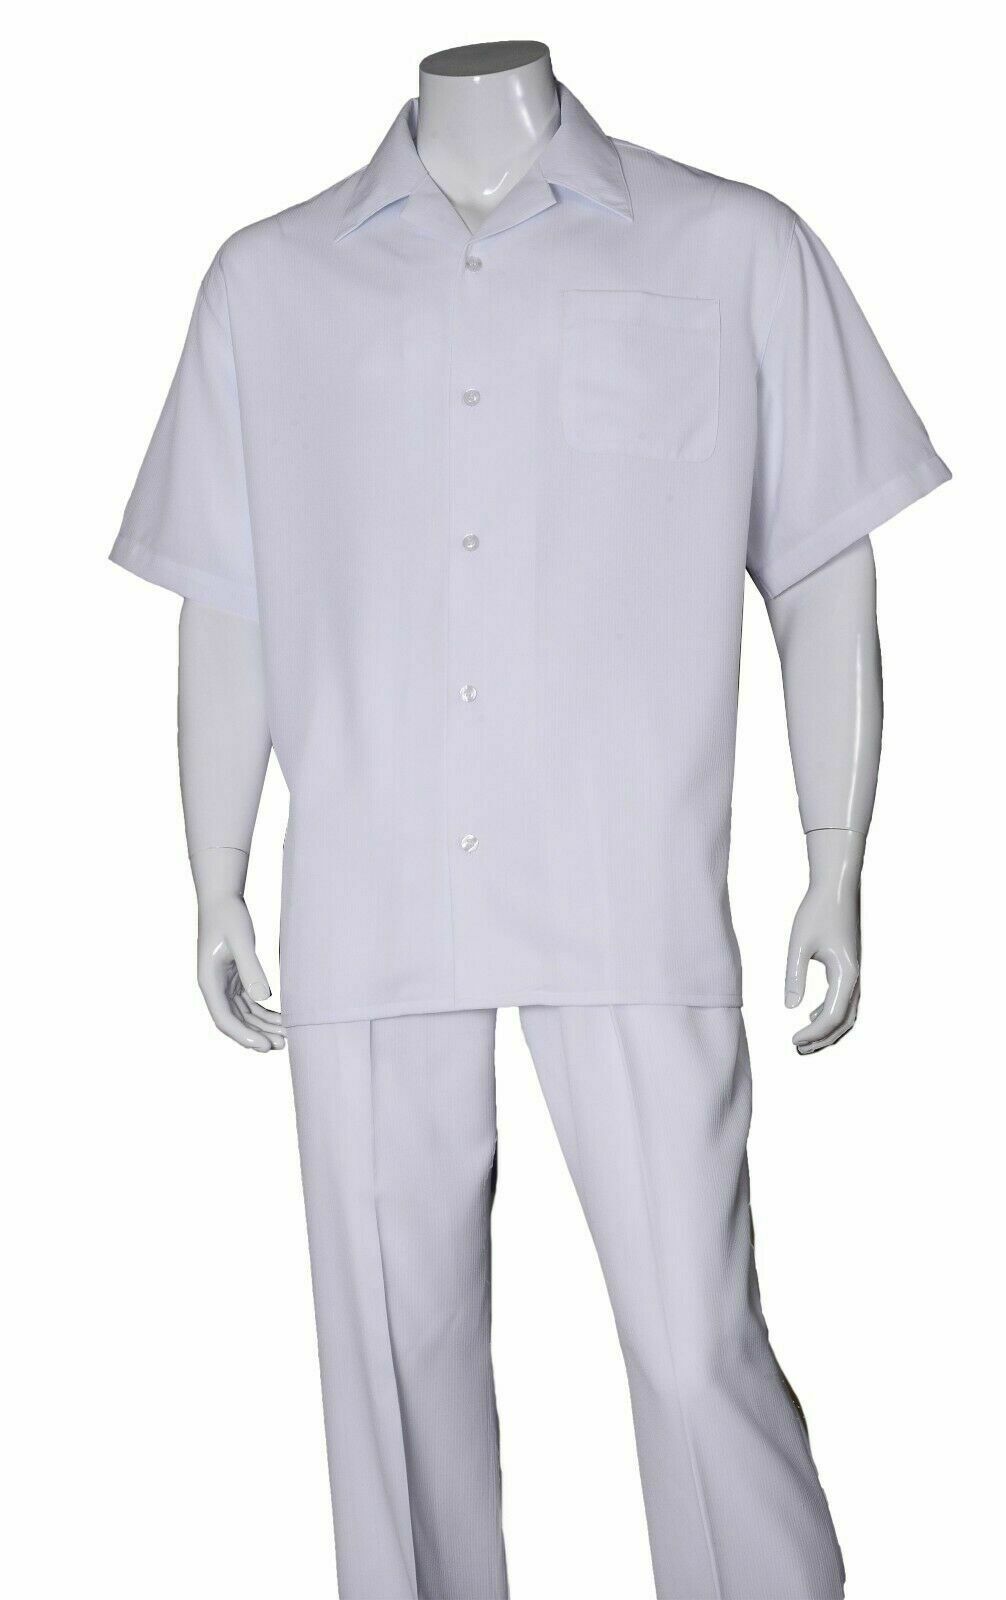 Fortino Landi Walking Set M2971-White - Church Suits For Less